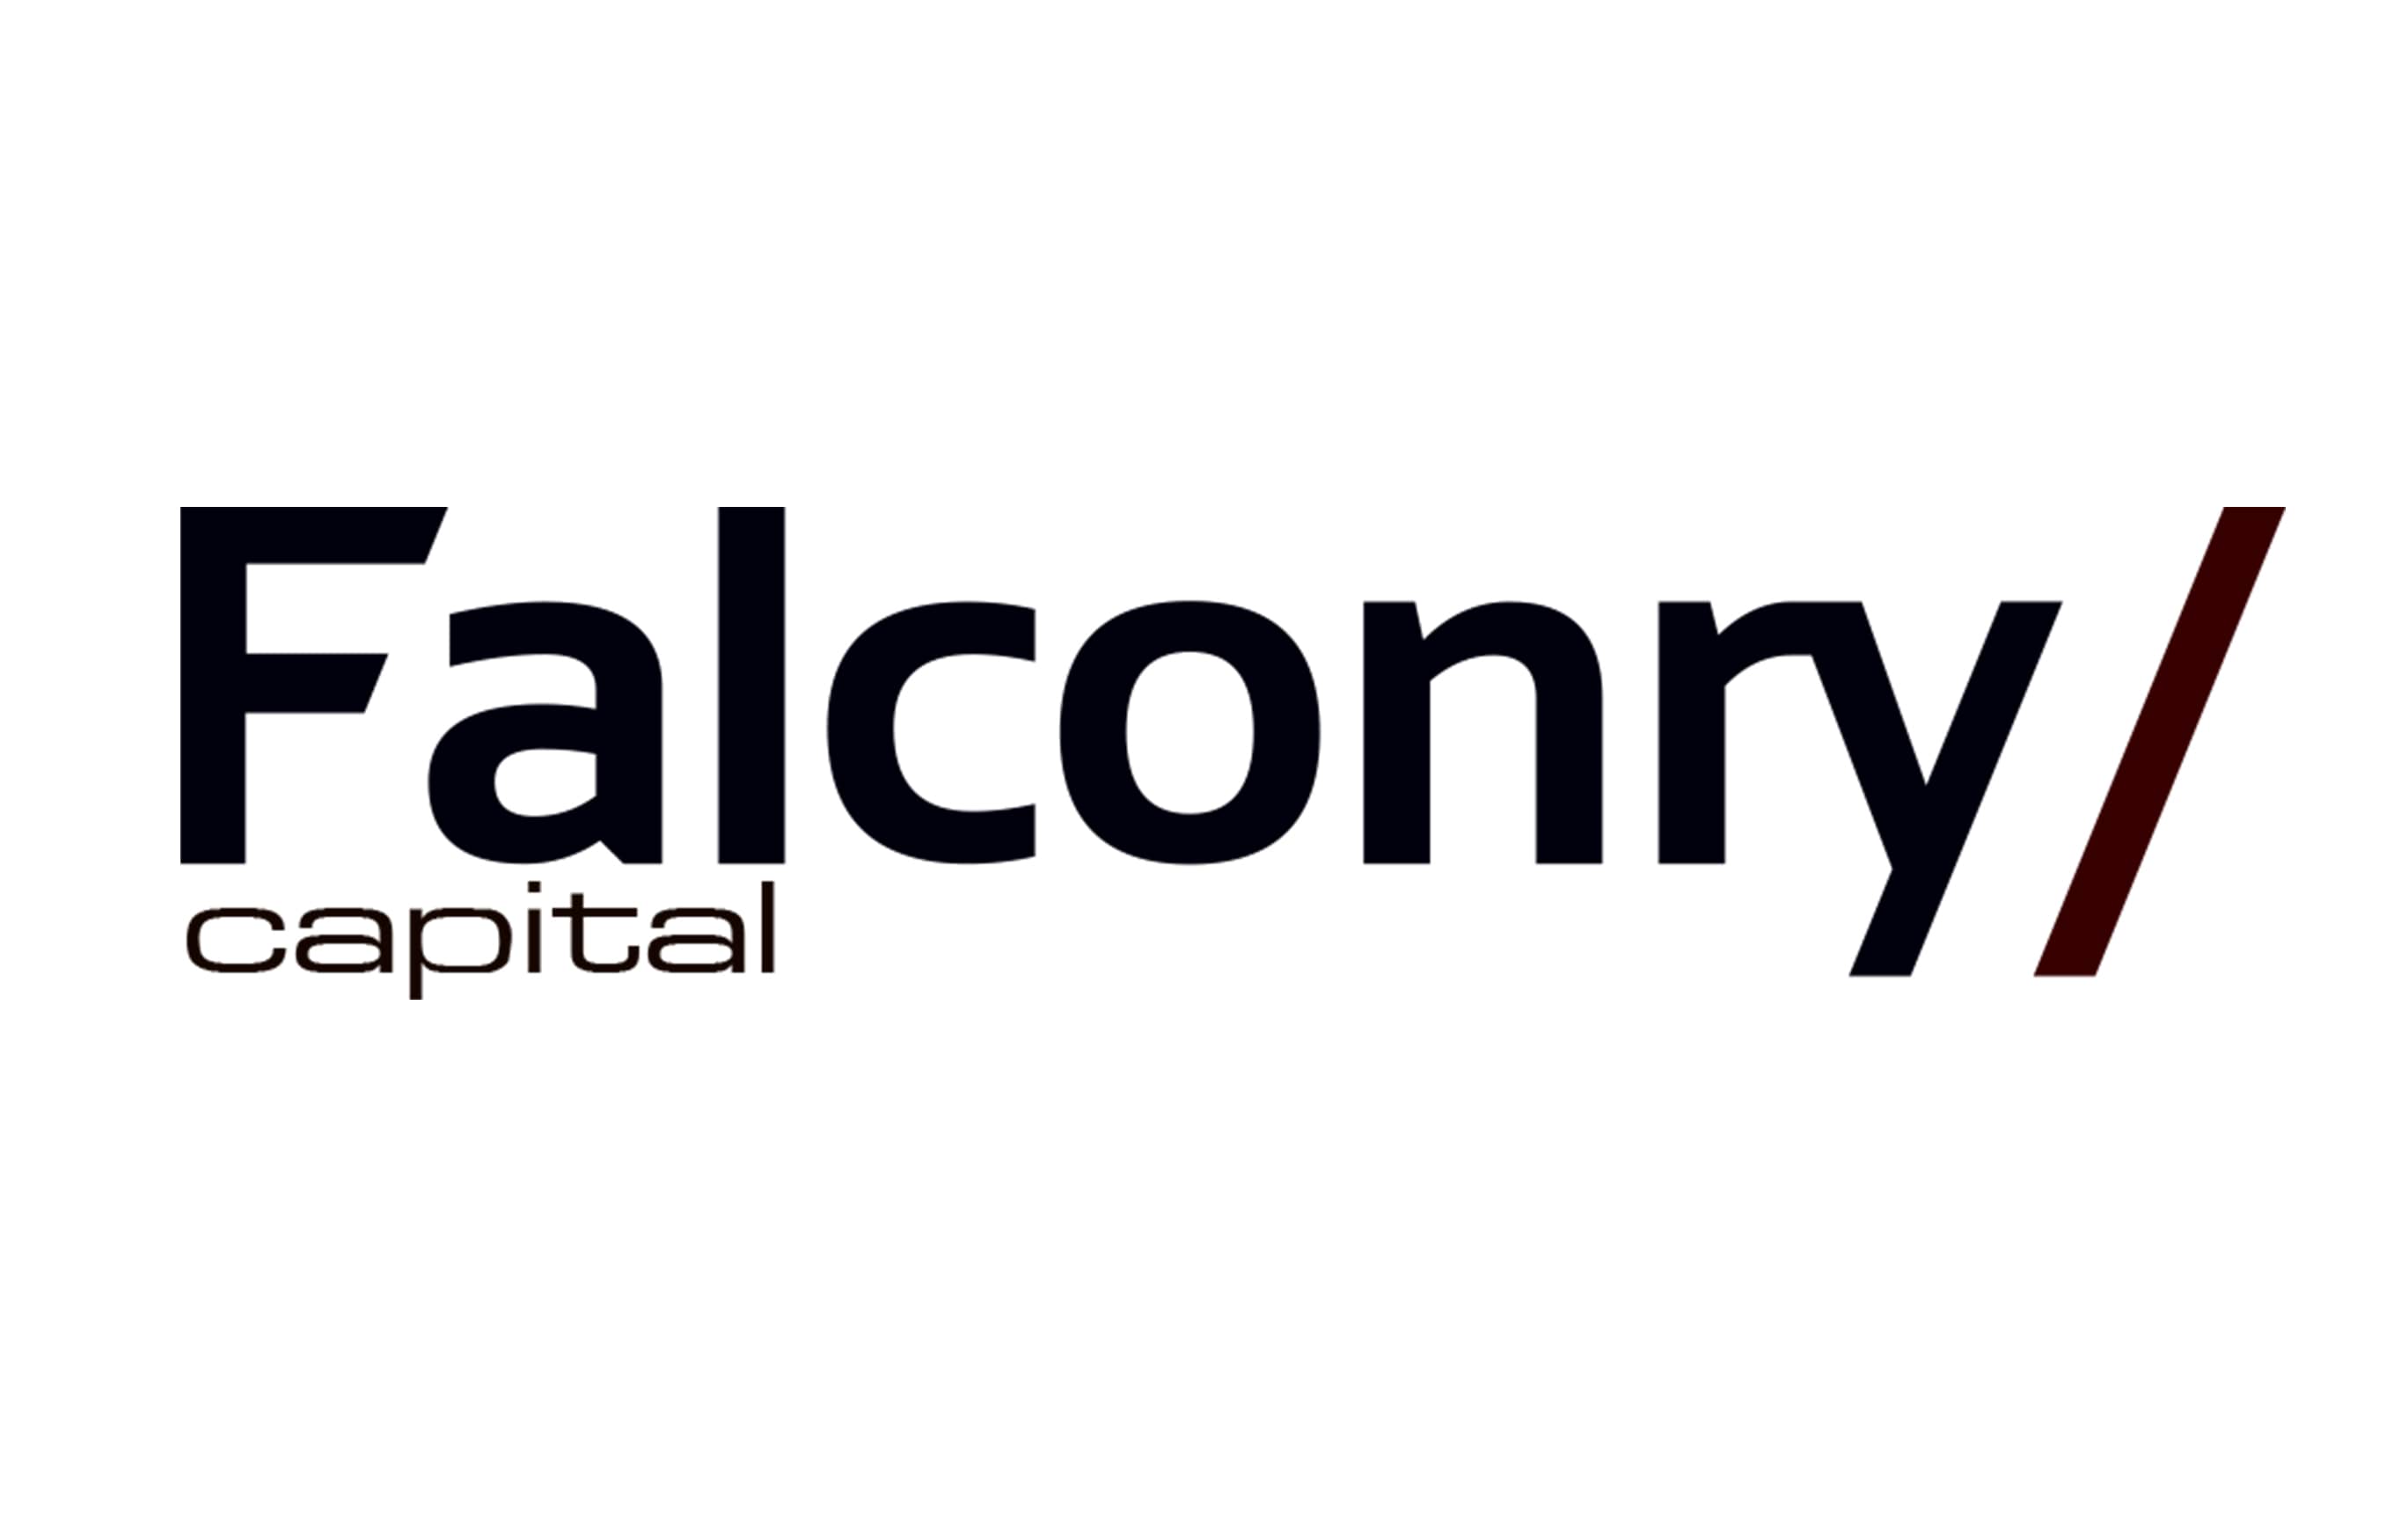 Falconry / capital